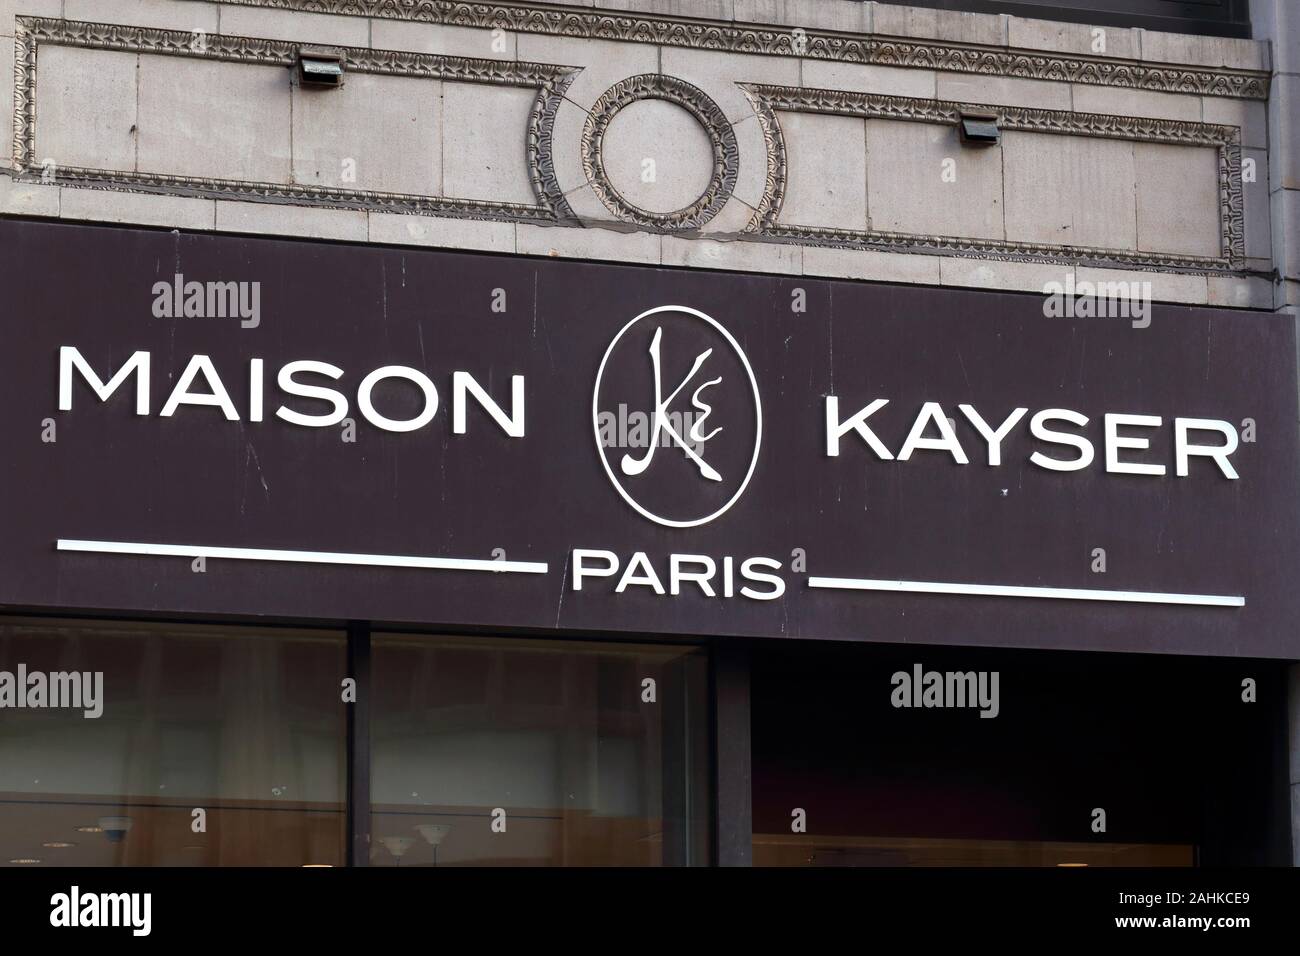 Ein Maison Kayser Bakery Cafe Logo auf einem kommerziellen loft Gebäude im Garment District von Manhattan, New York, NY Stockfoto